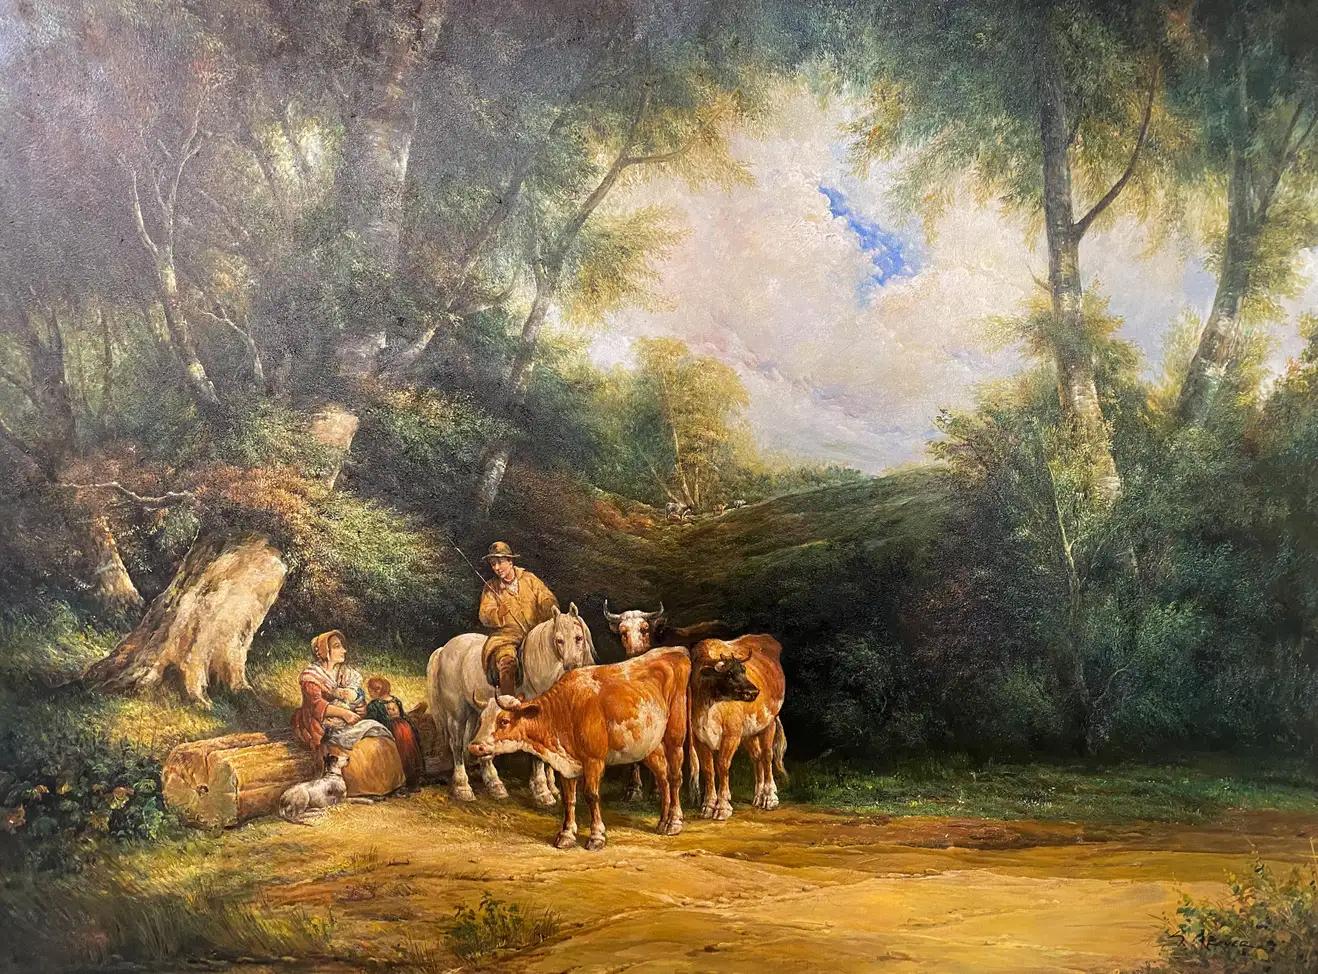 Grande peinture impressionniste à l'huile sur toile d'un fermier avec du bétail, encadrée - Painting de Julius Paul Junghanns